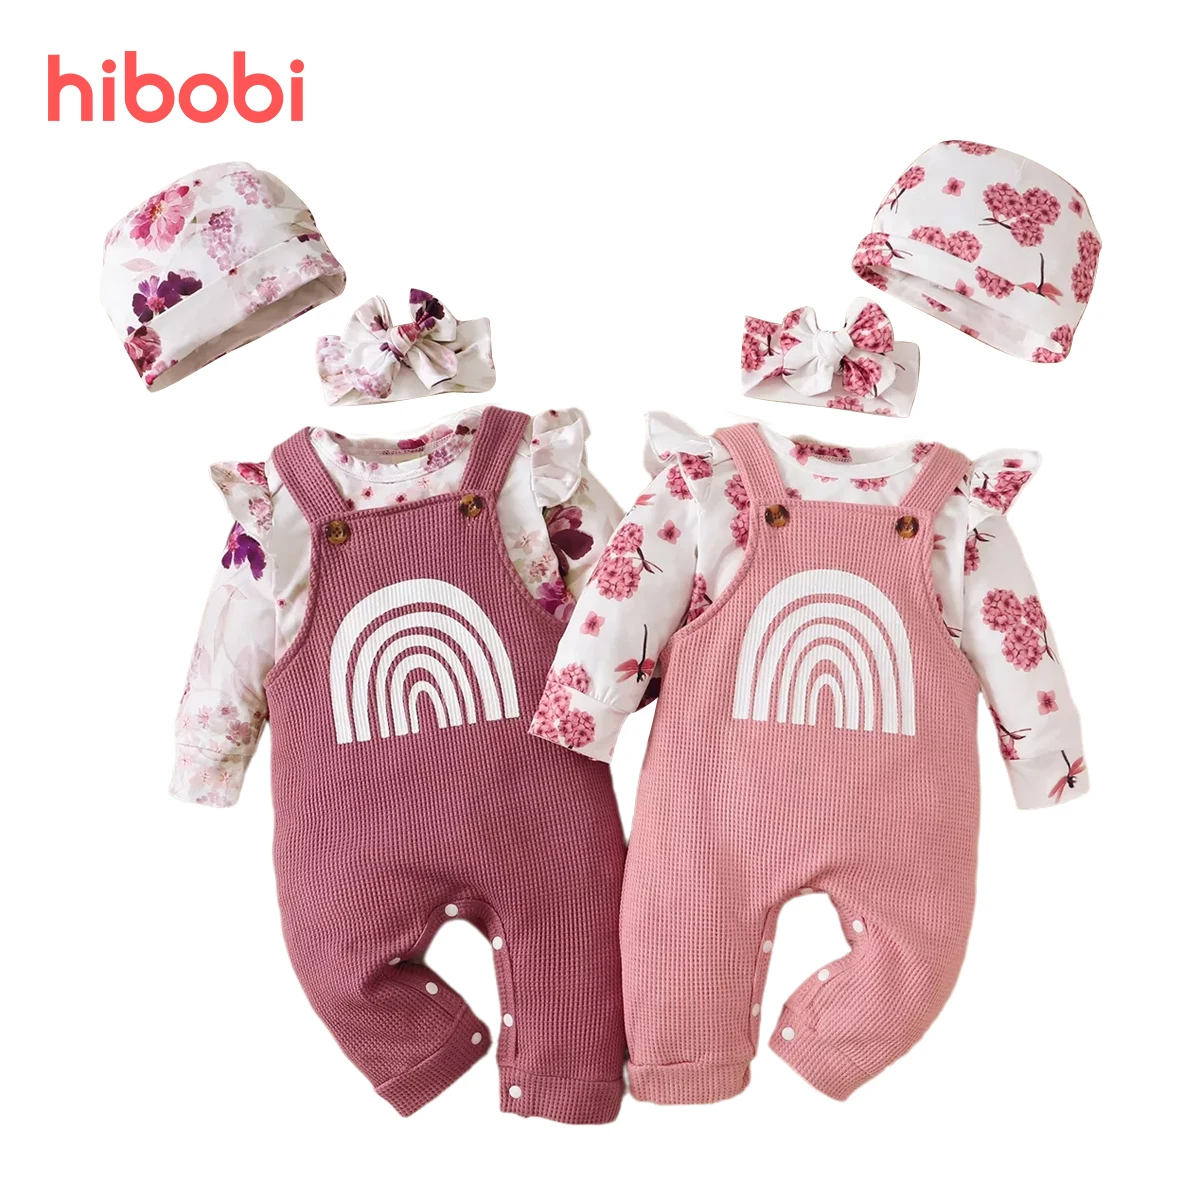 hıbobı 3 adet Bebek Kız Giysileri Set Çiçek Baskılı Fırfır Kollu Romper Bebek Bebek Bodysuit ve Gökkuşağı Pantolon Yenidoğan Bebek için